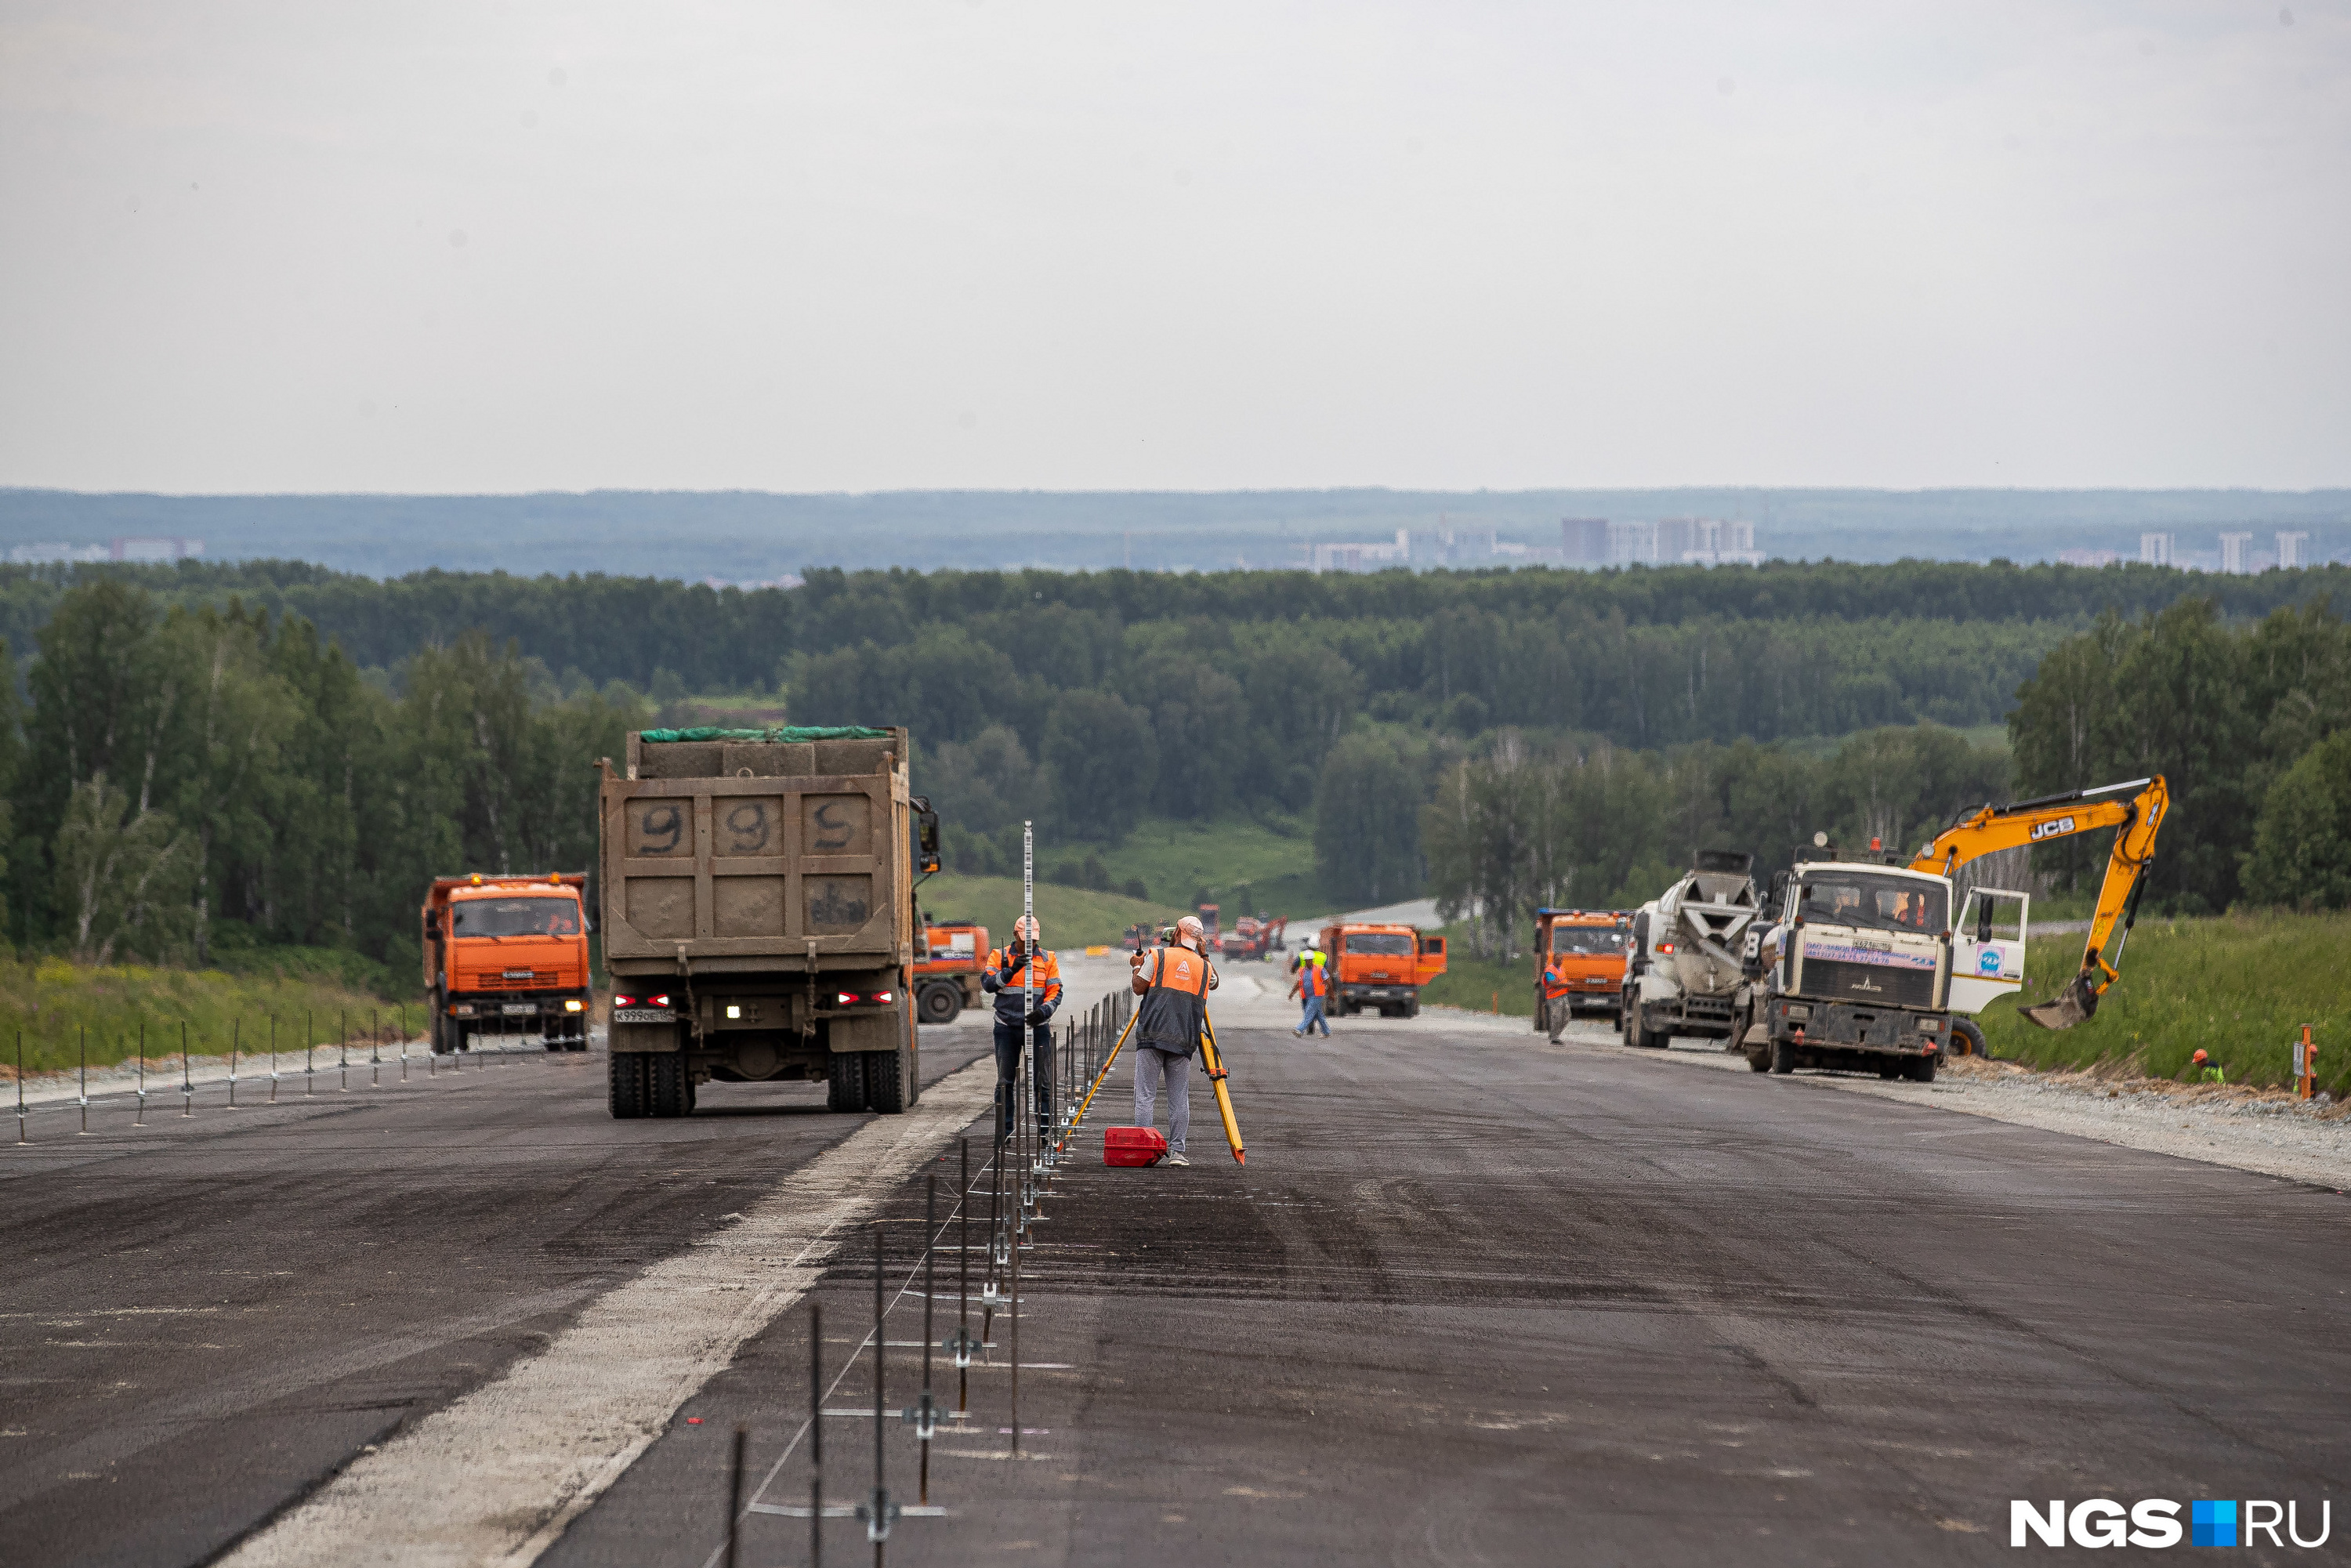 Сумма контракта на строительство развязки — 3 миллиарда 763 миллиона рублей